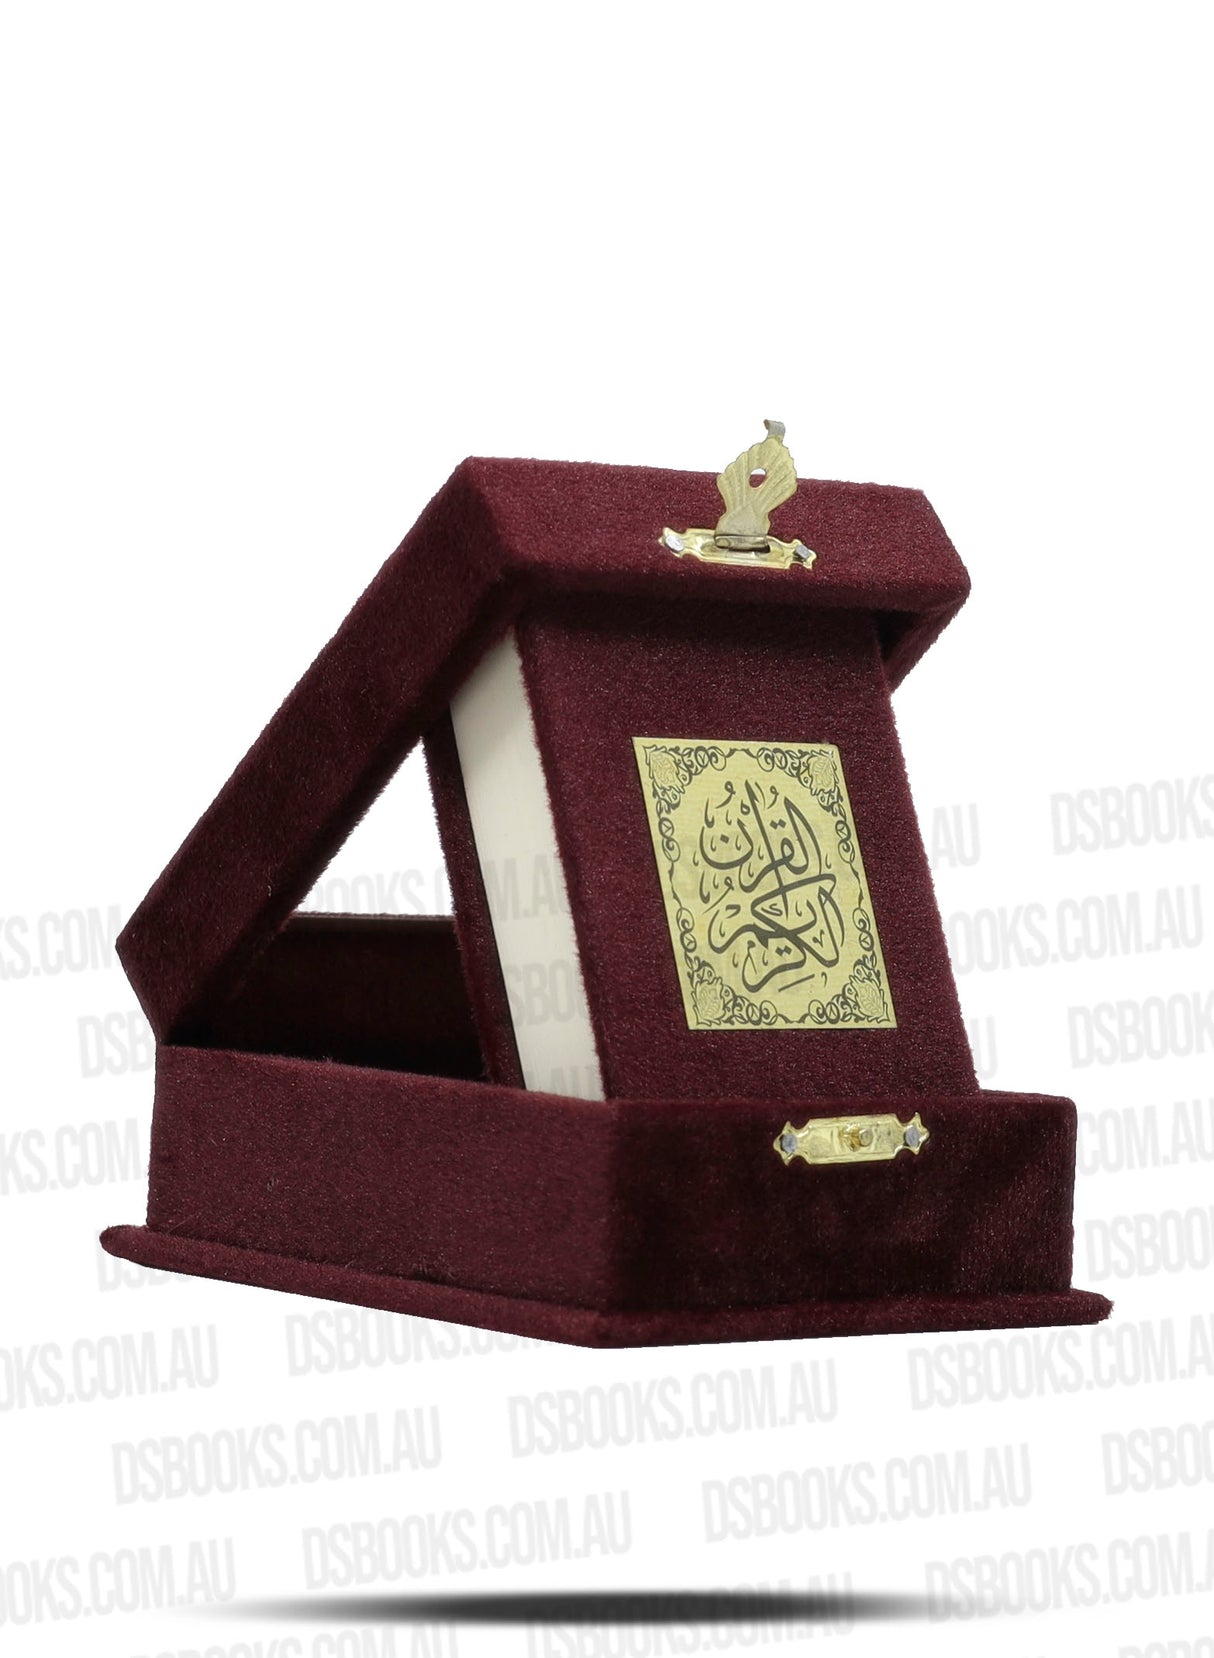 Qur'an Gift Box - Maroon